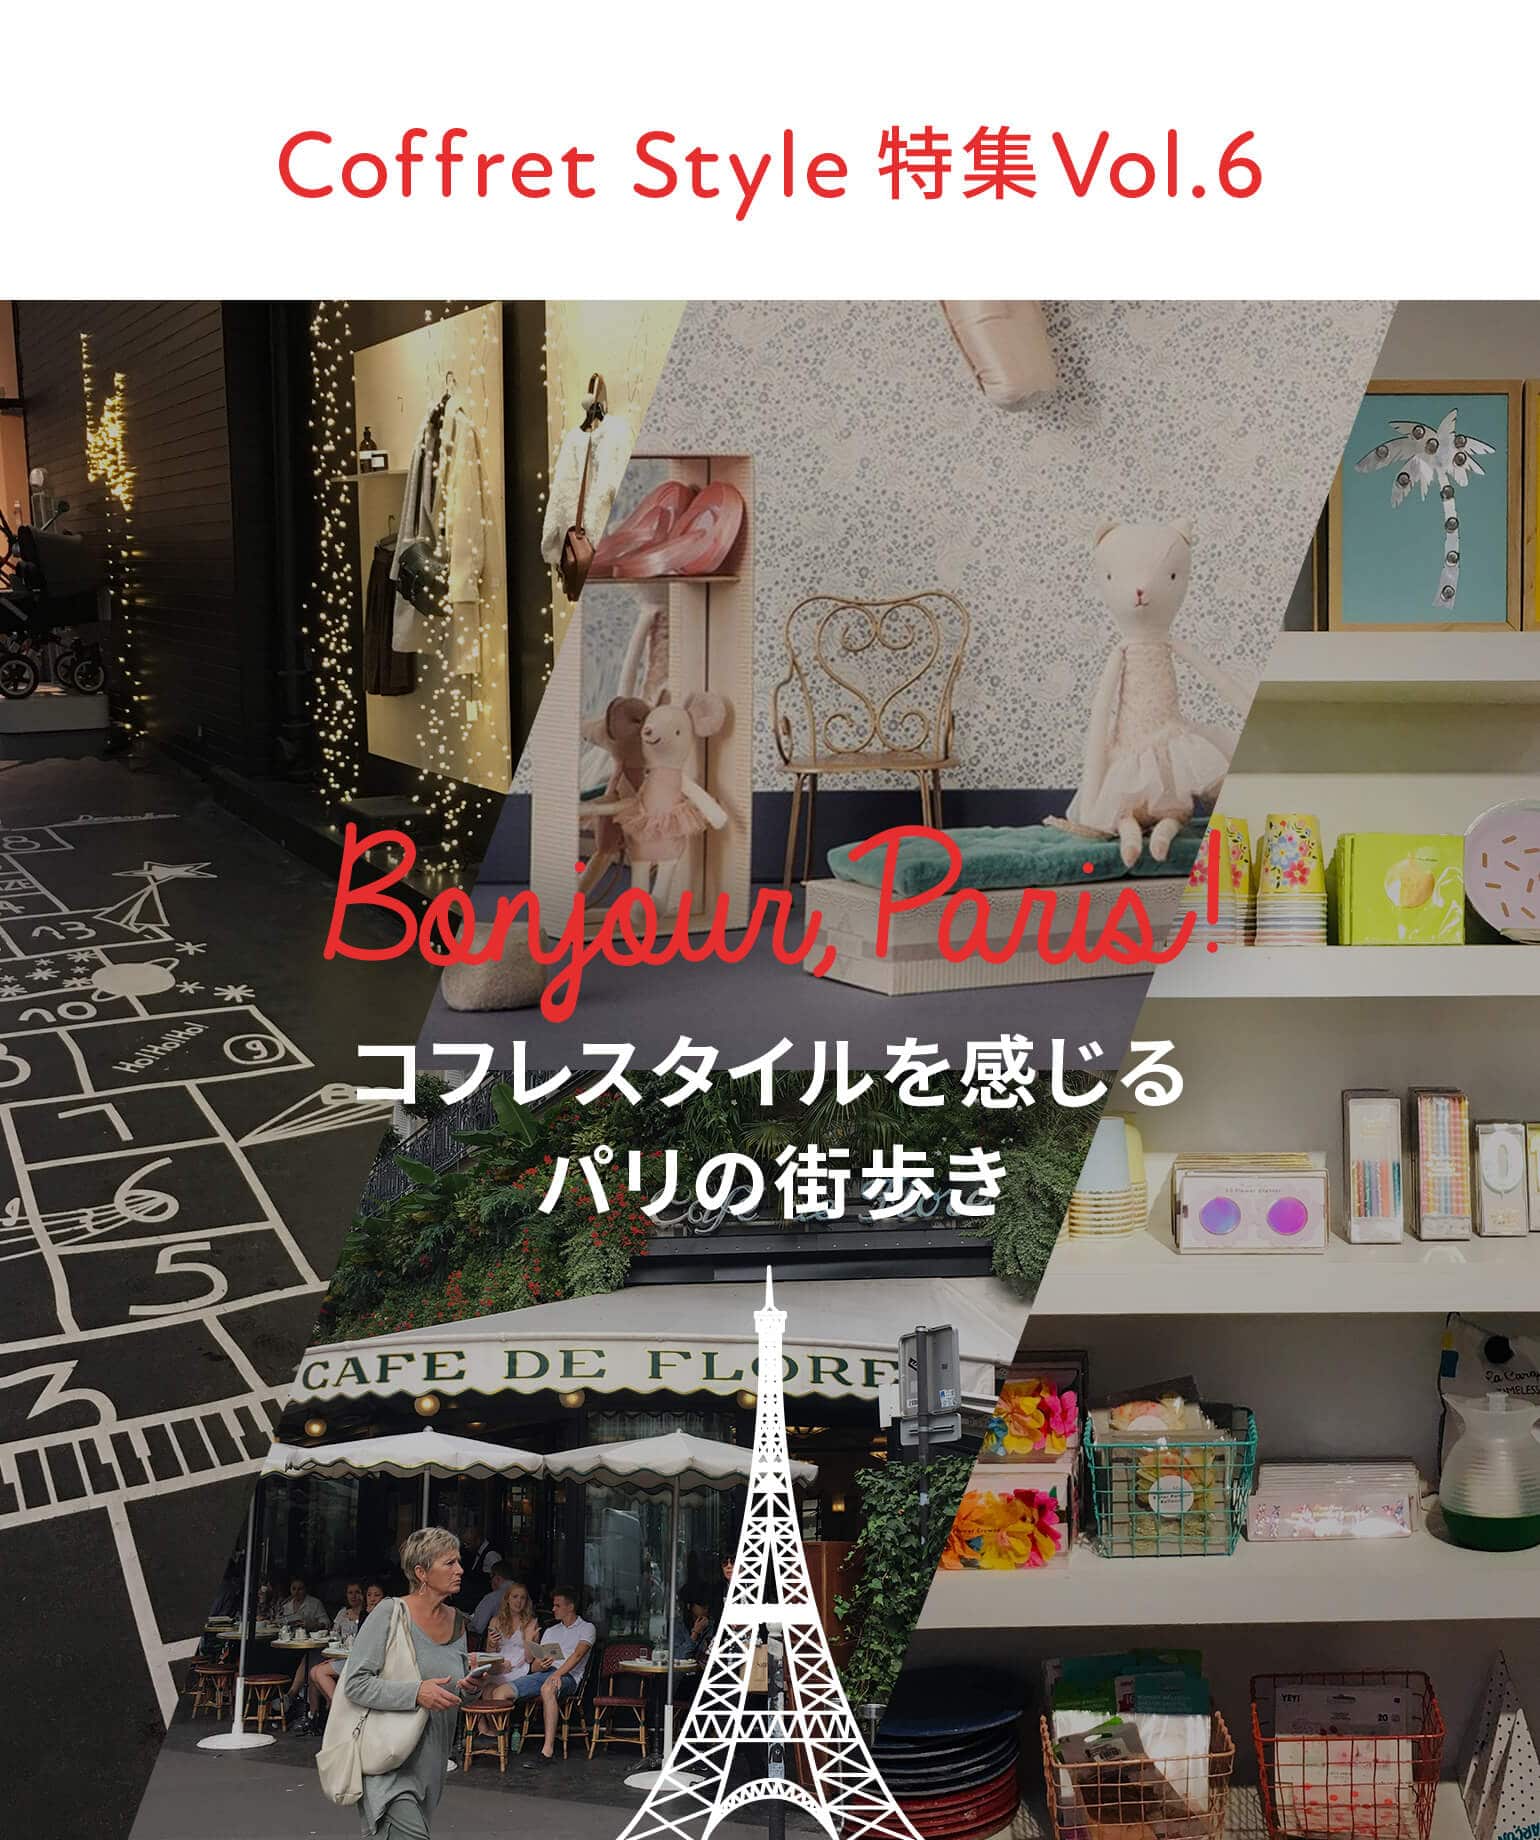 CoffretStyle特集Vol.6 コフレスタイルを感じるパリの街歩き